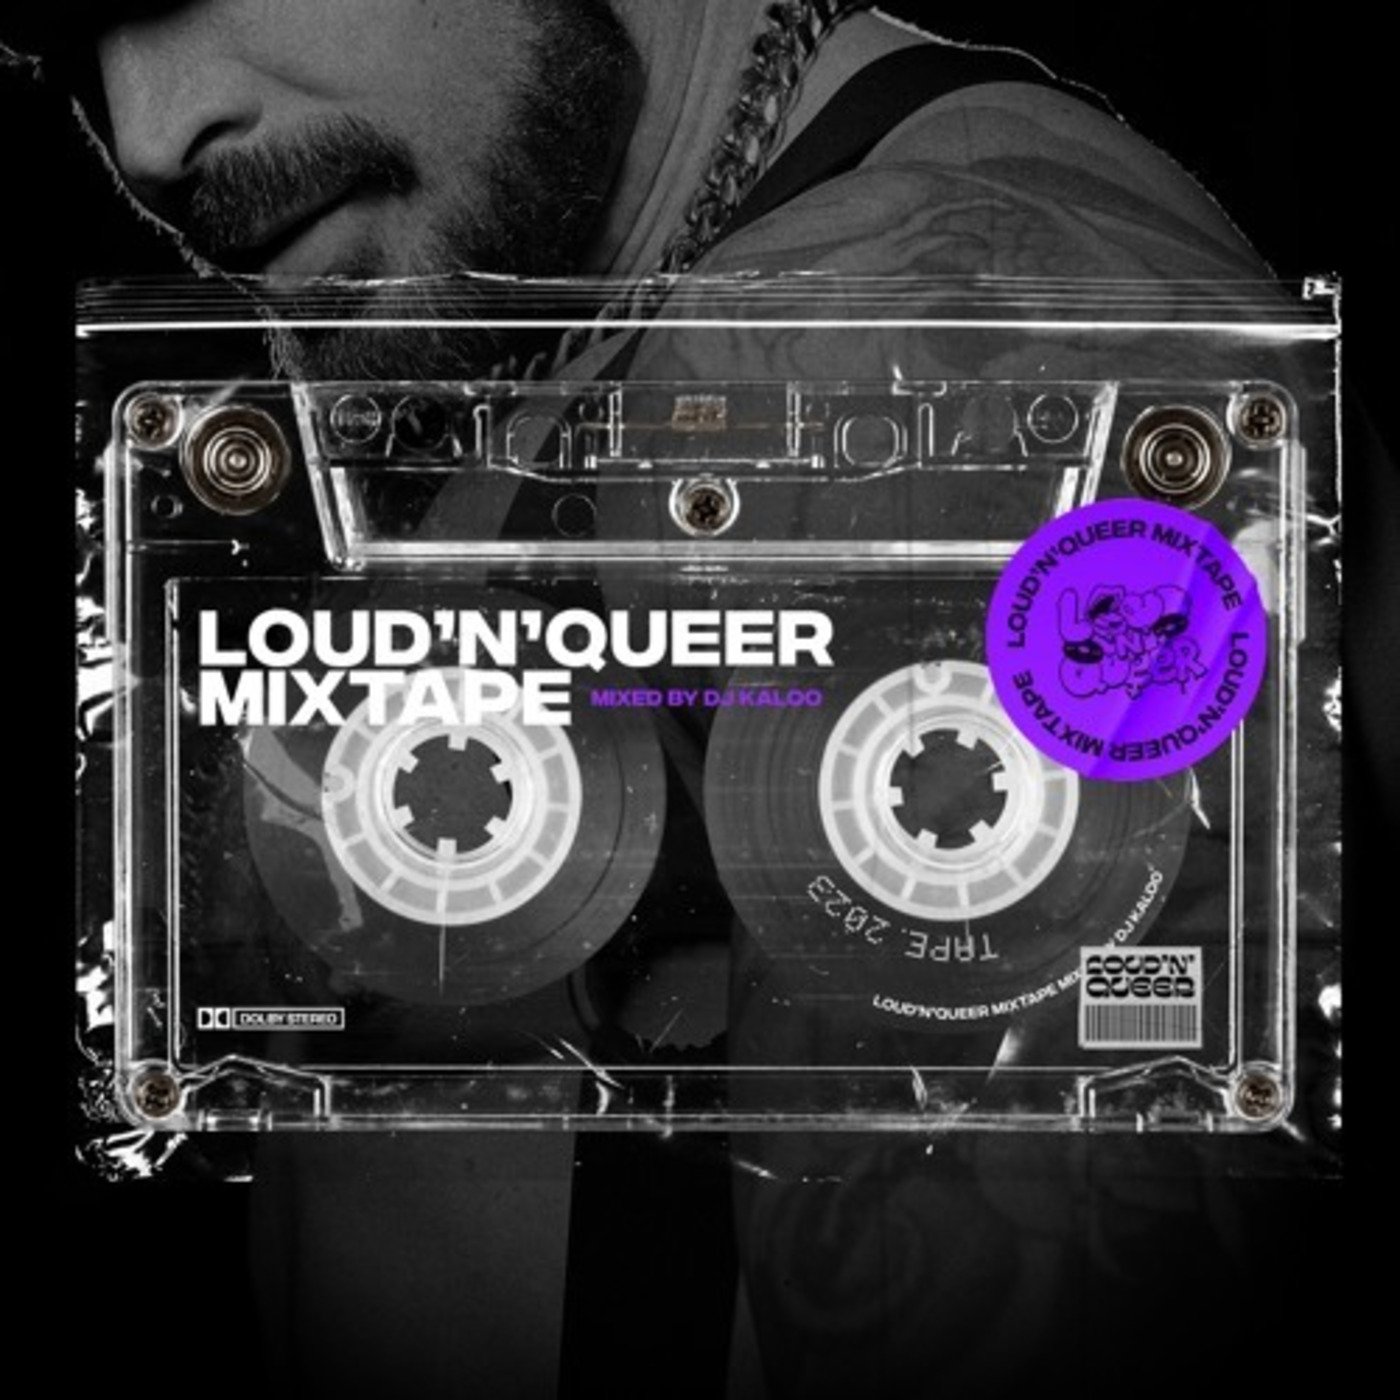 Loud'N'Queer Mixtape by DJ Kaloo - February 2023